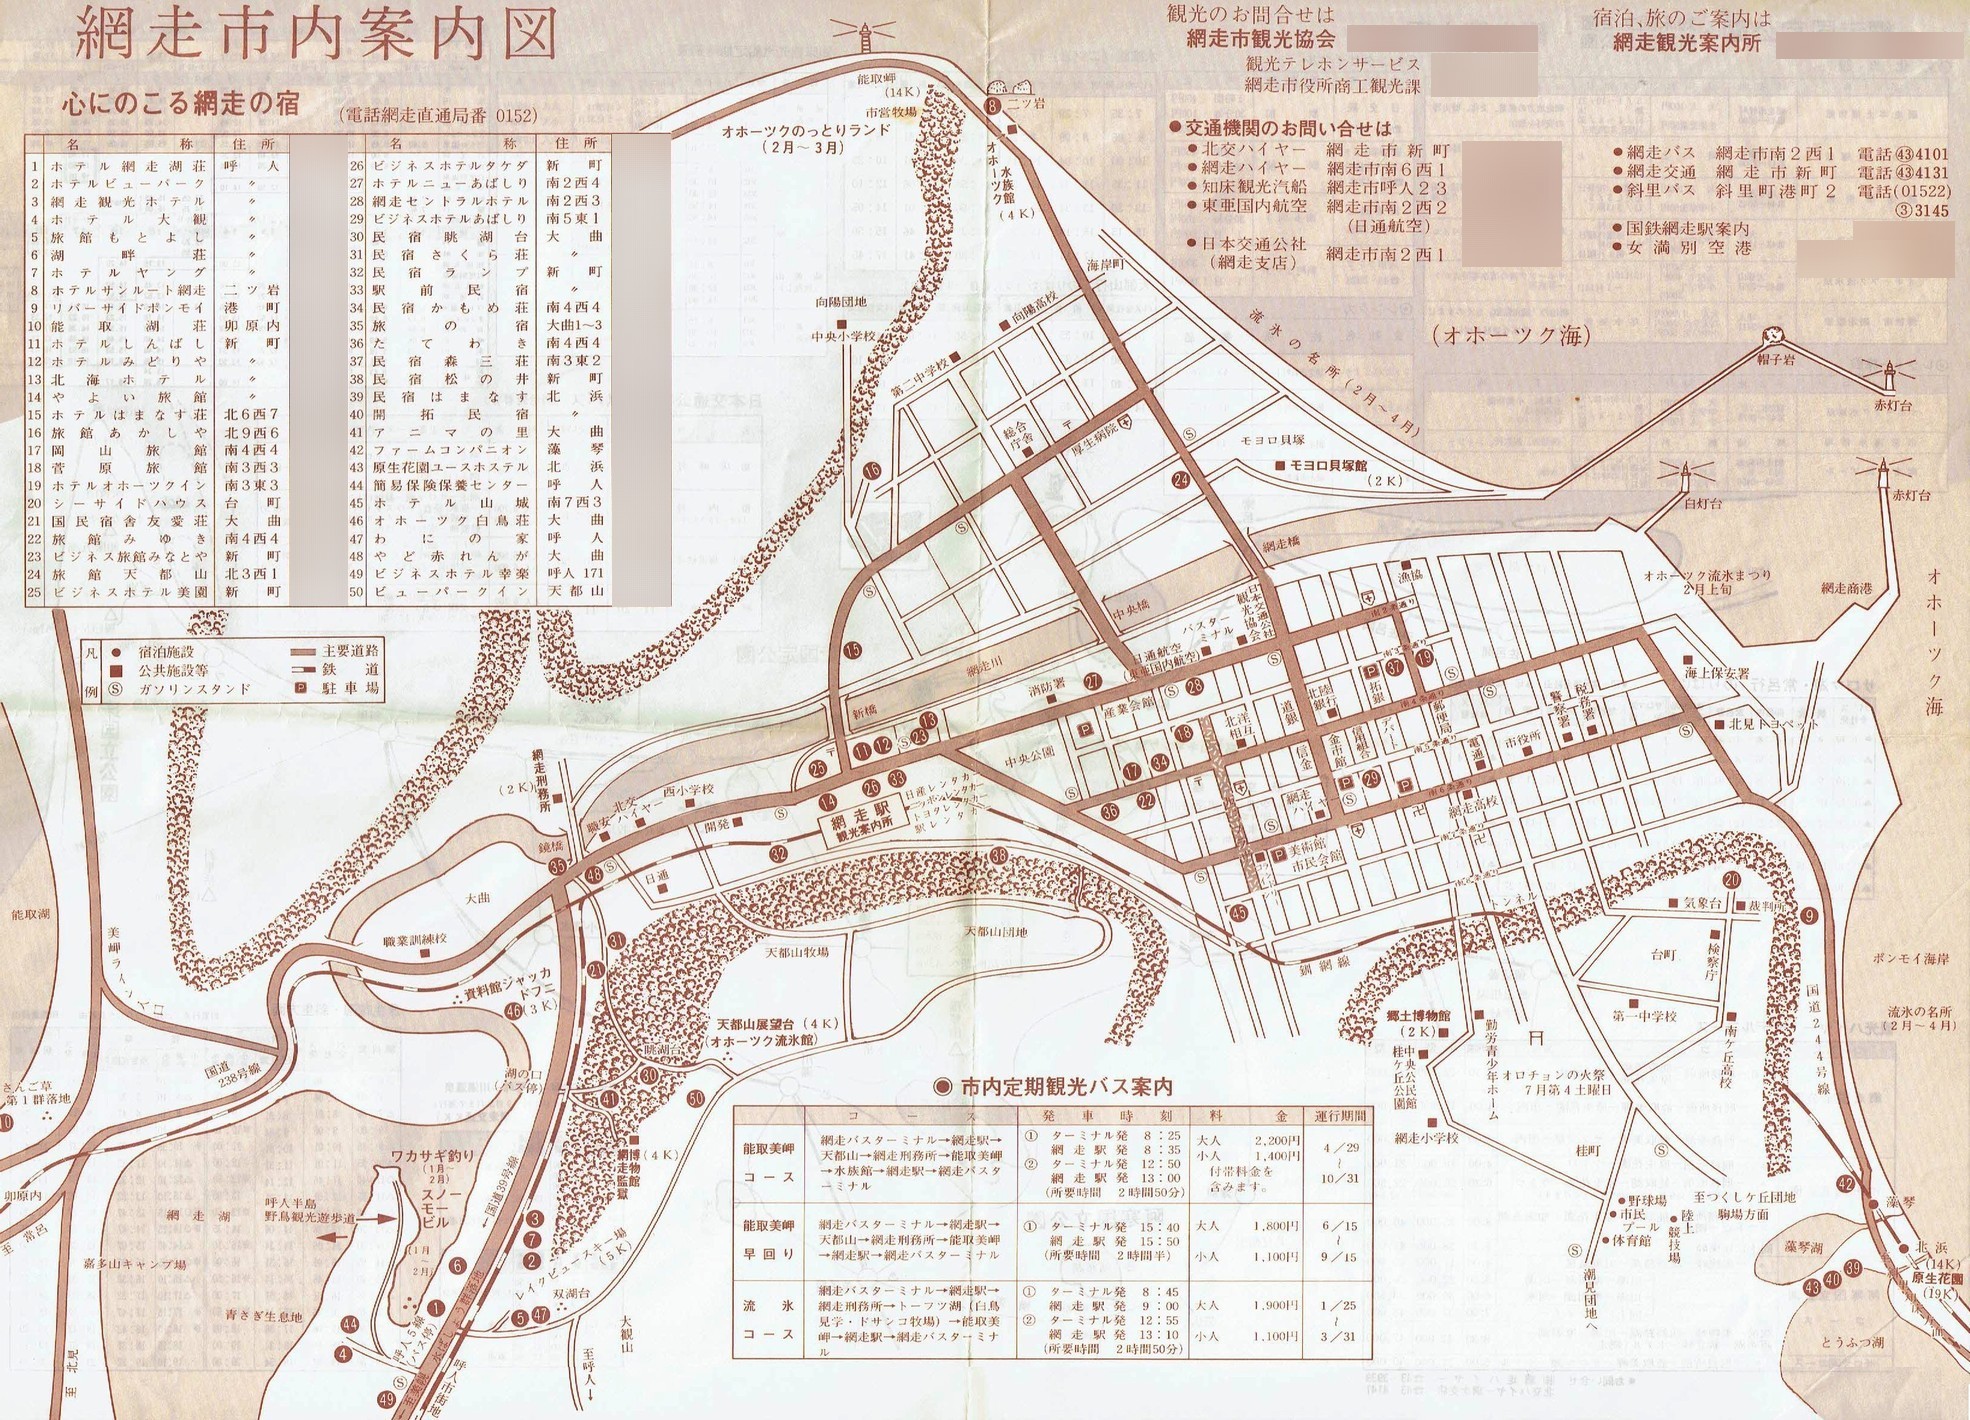 1985-05-01現在_網走市観光協会_網走市内案内図表面